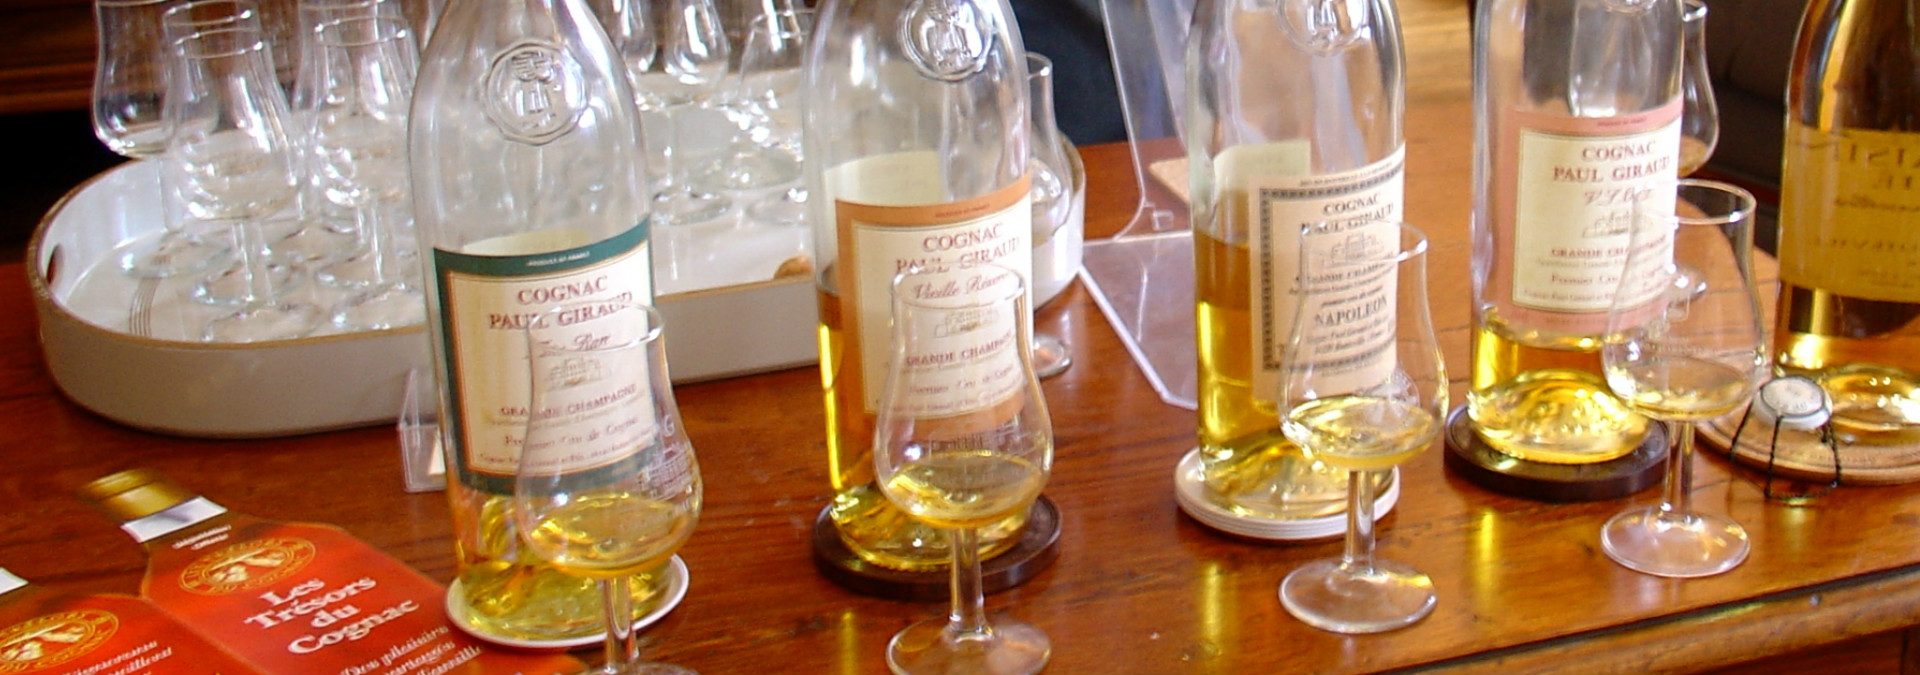 Cognac Tasting Tour